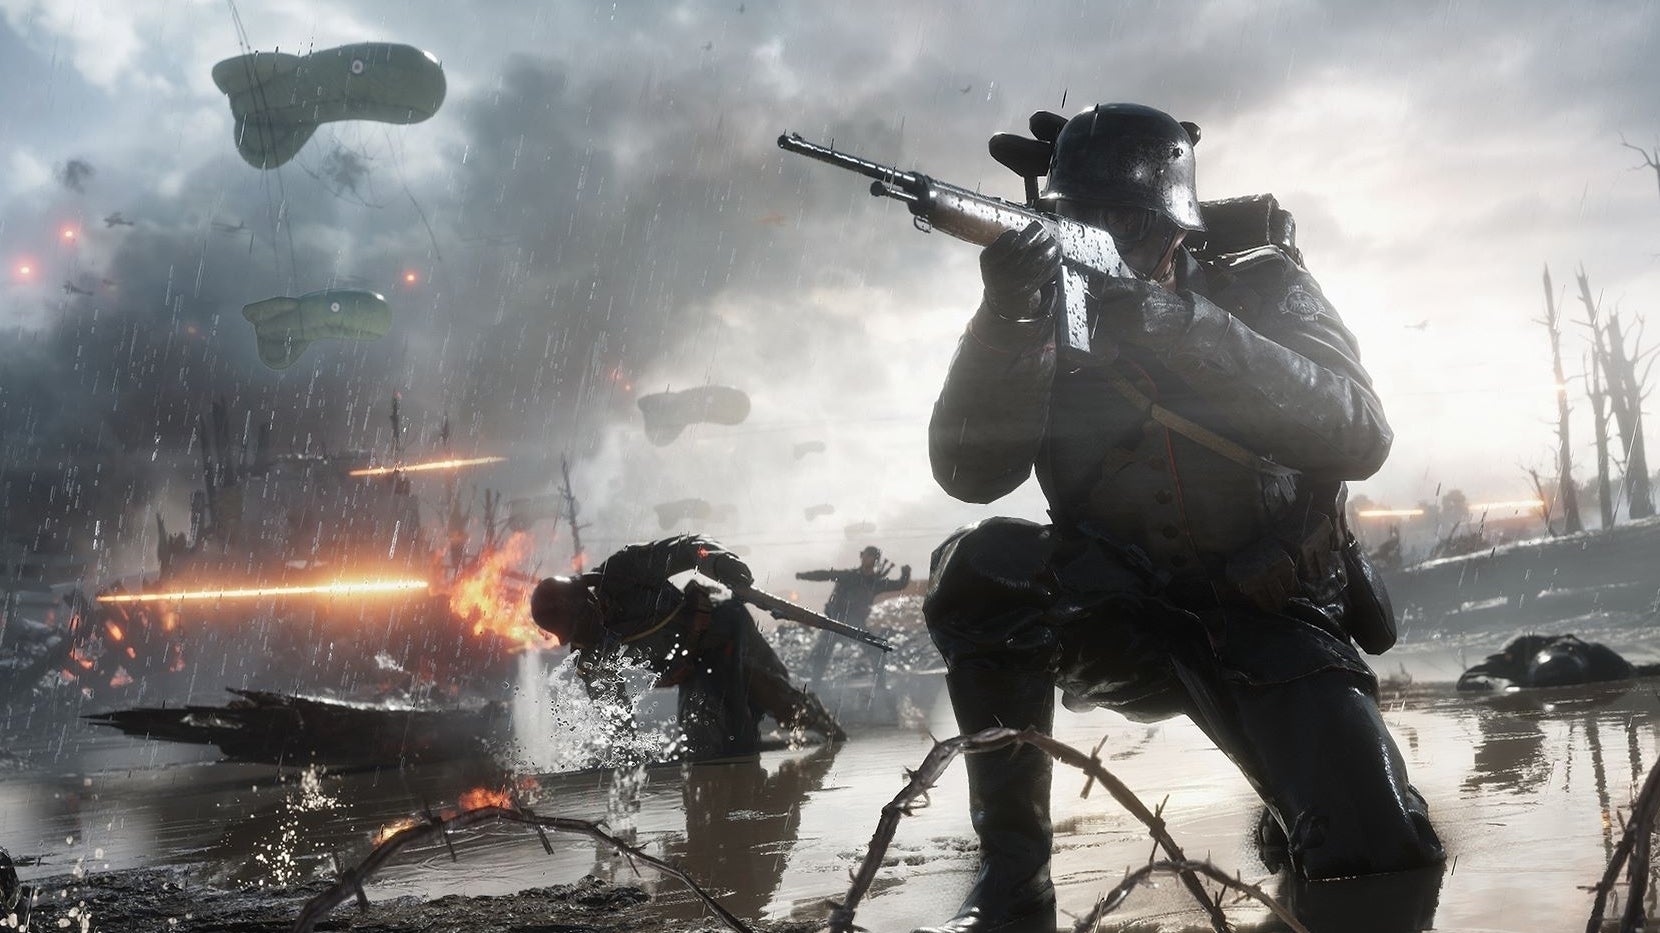 Obrazki dla Battlefield w niecodziennym materiale. Gracze nie wiedzieli, że są nagrywani